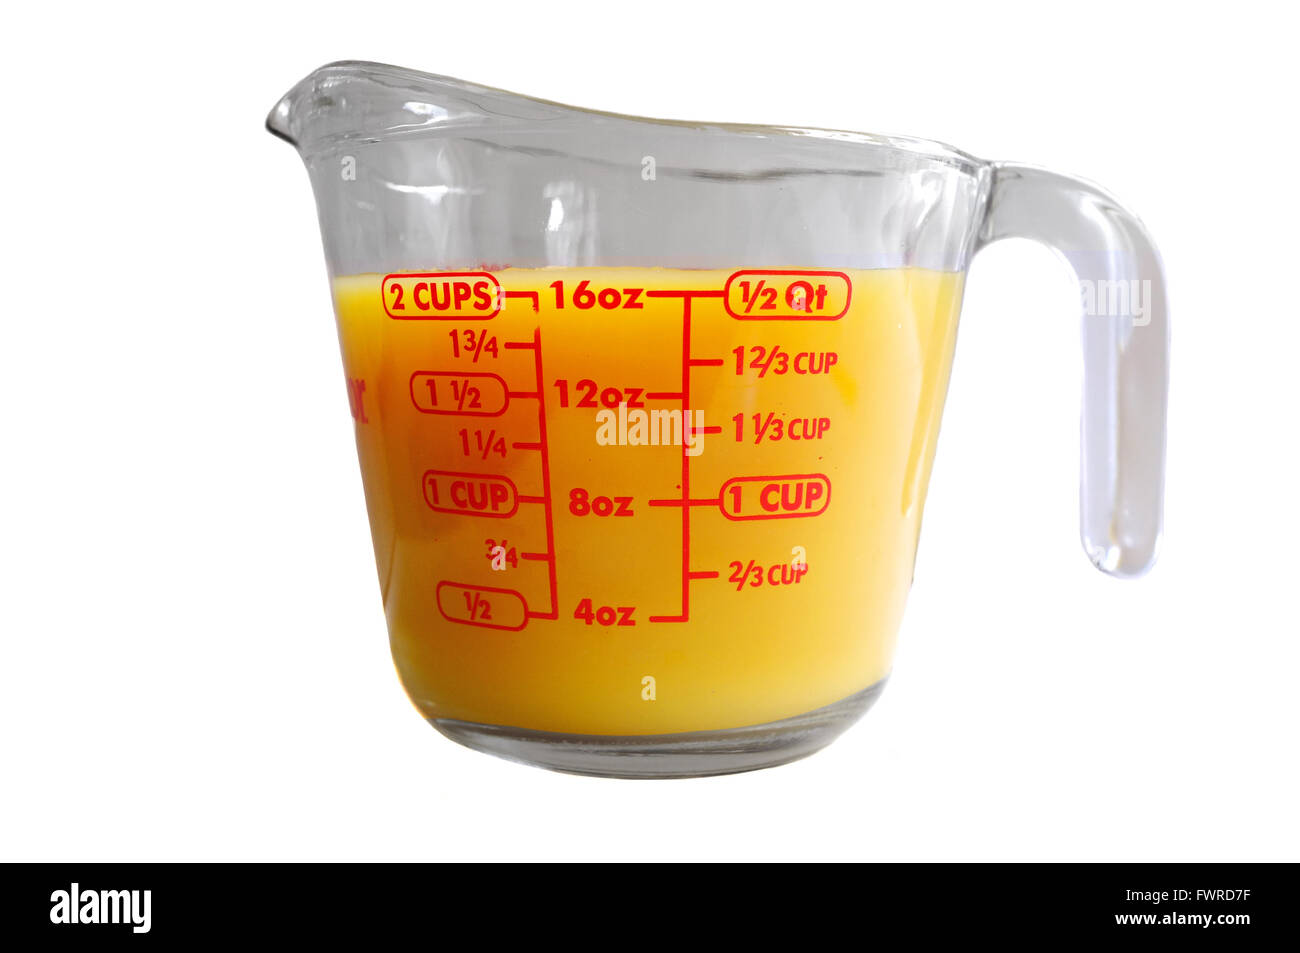 Líquido de color naranja en una jarra medidora de Pyrex fotografiado contra  un fondo blanco Fotografía de stock - Alamy